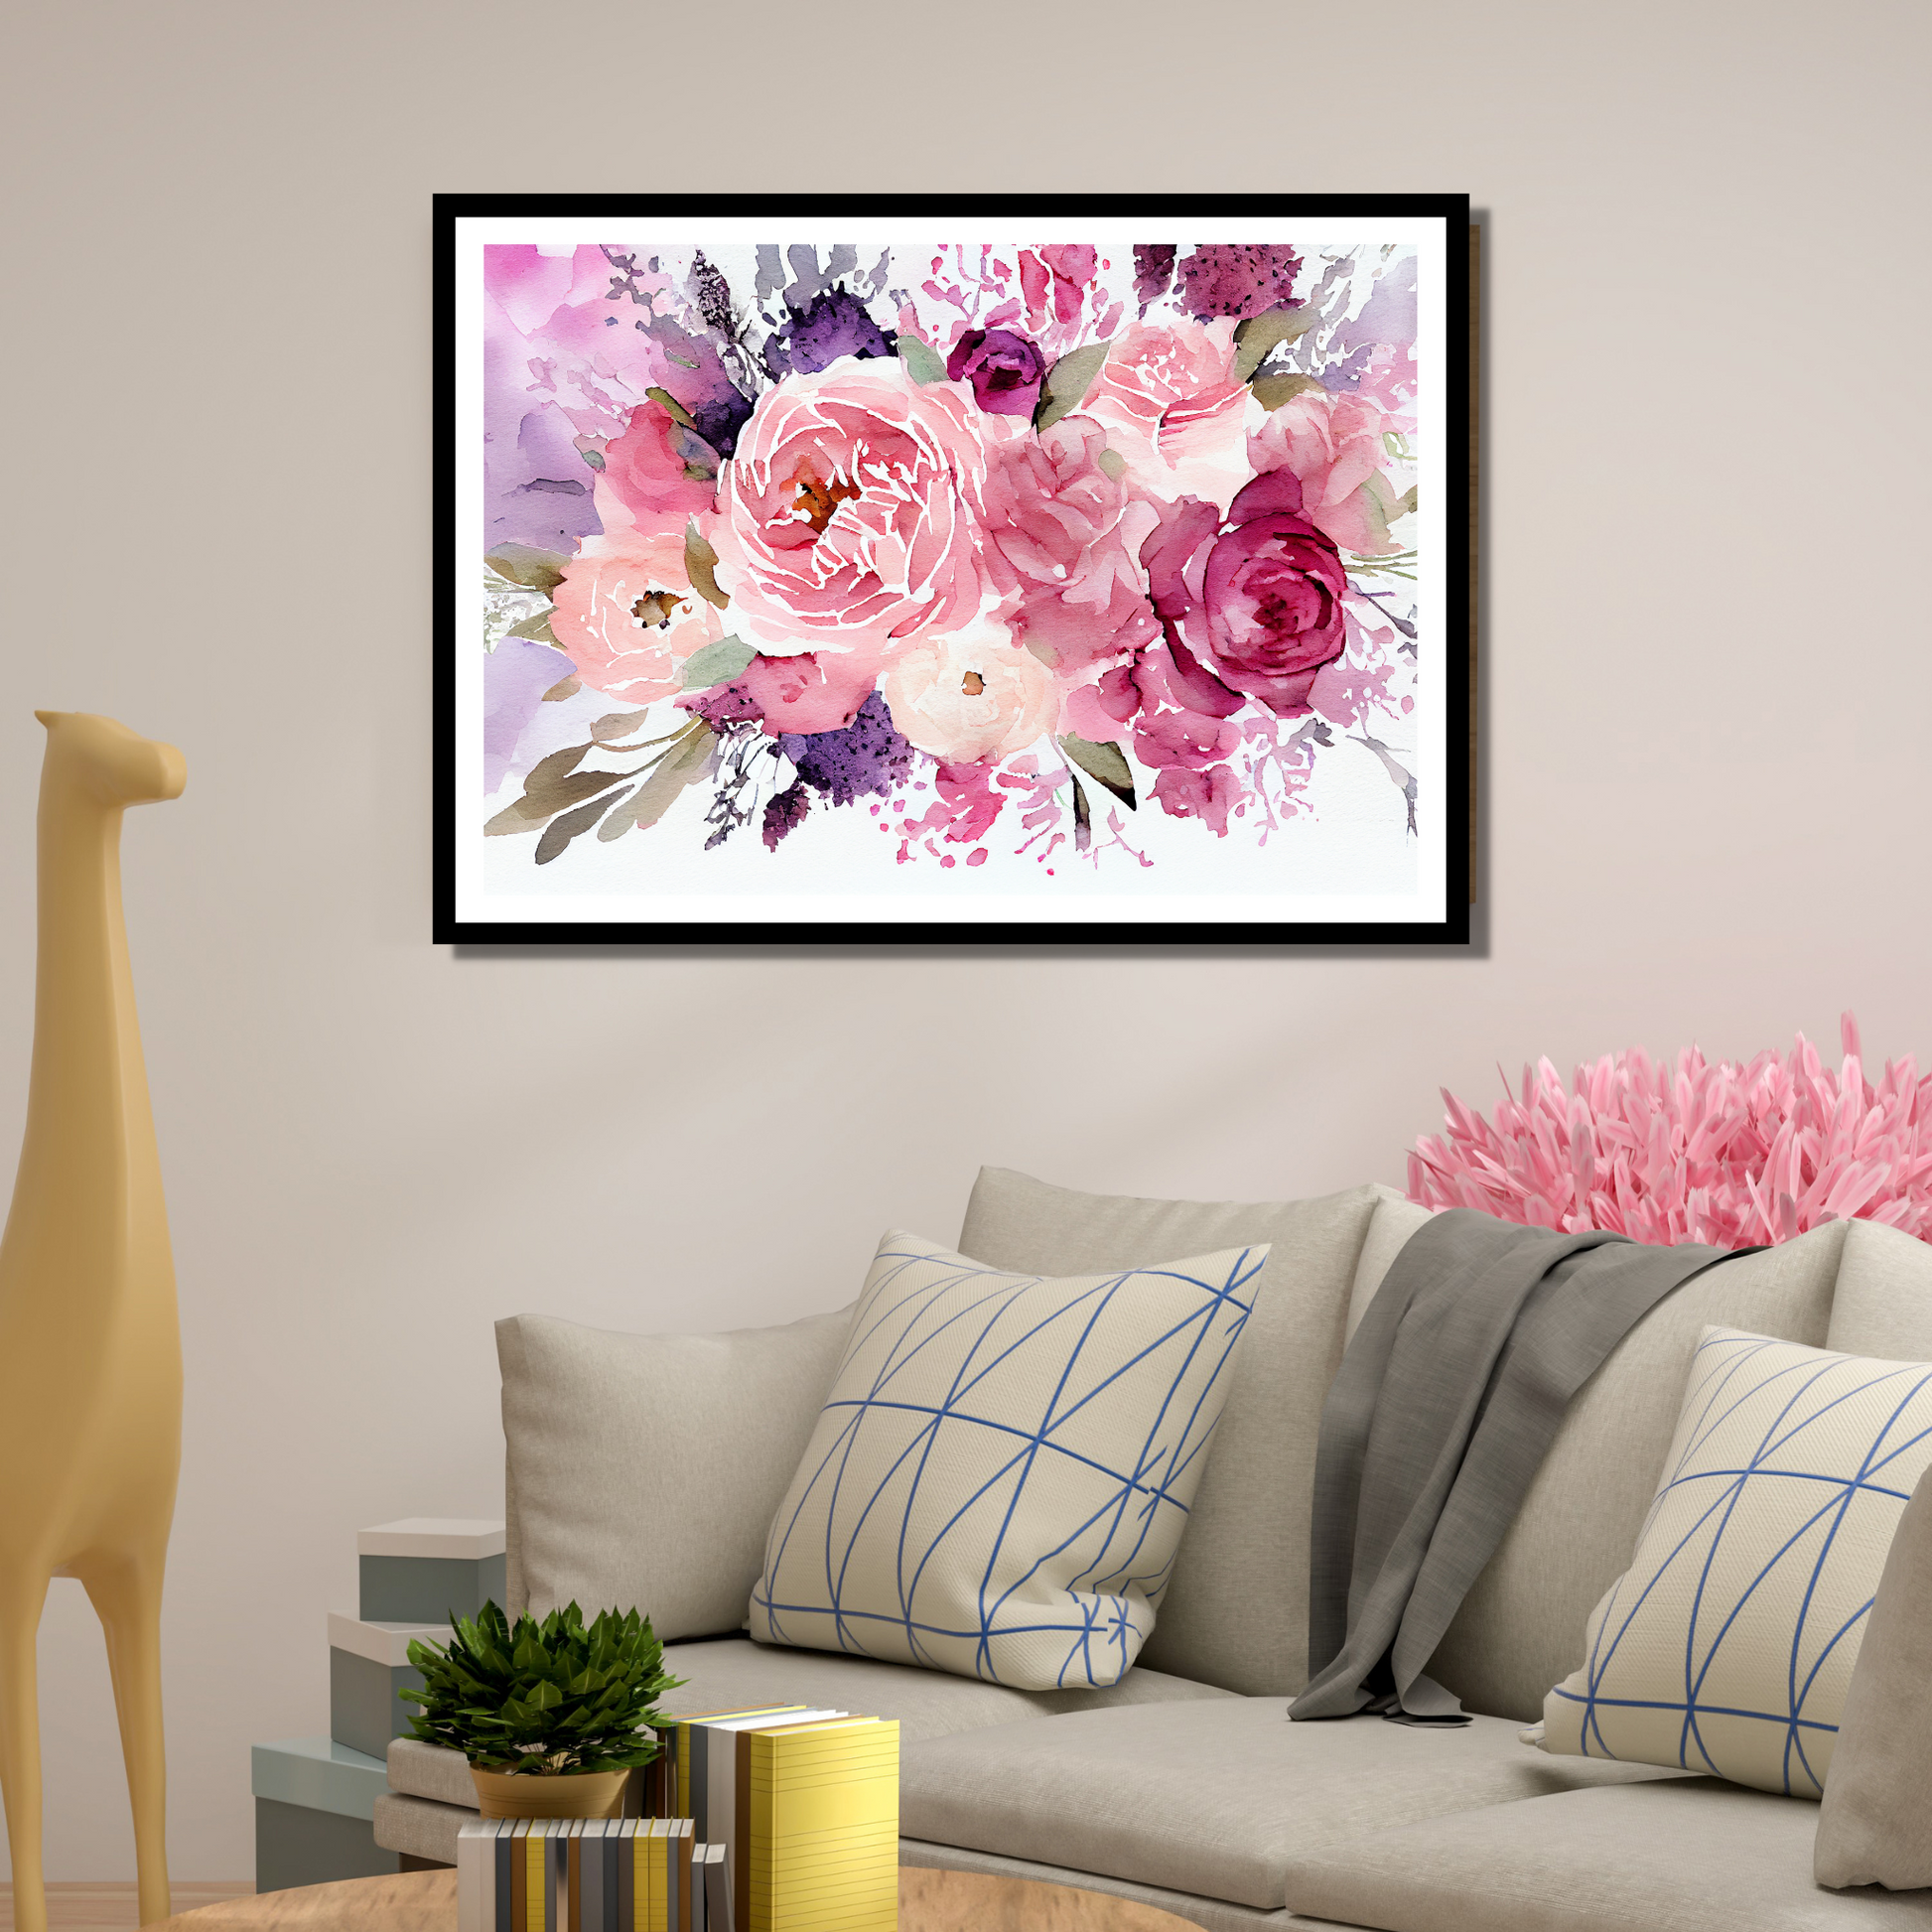 Blomstermotiv i vannfarger i nyanser burgunder, rosa og lillan. Plakaten har hvit dekorativ kant rundt.